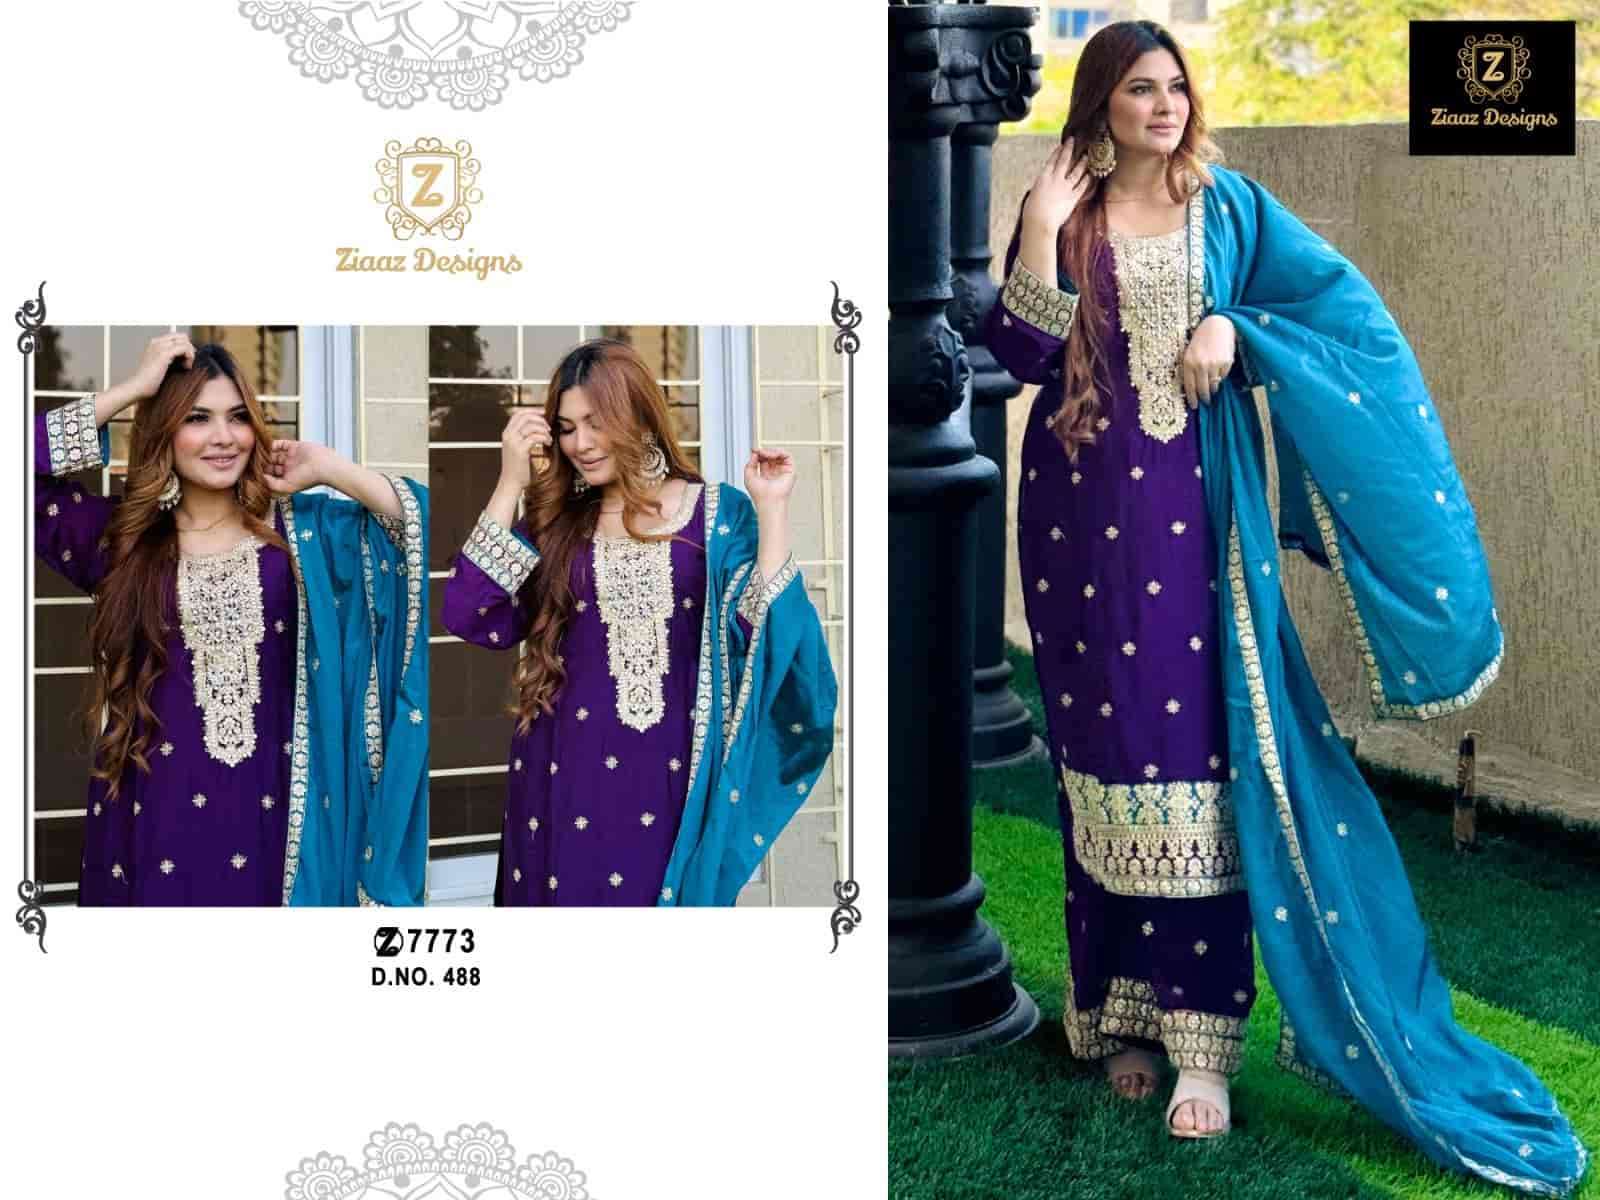 Ziaaz Designs 488 Fancy Style Designer Salwar Kameez Buy Online